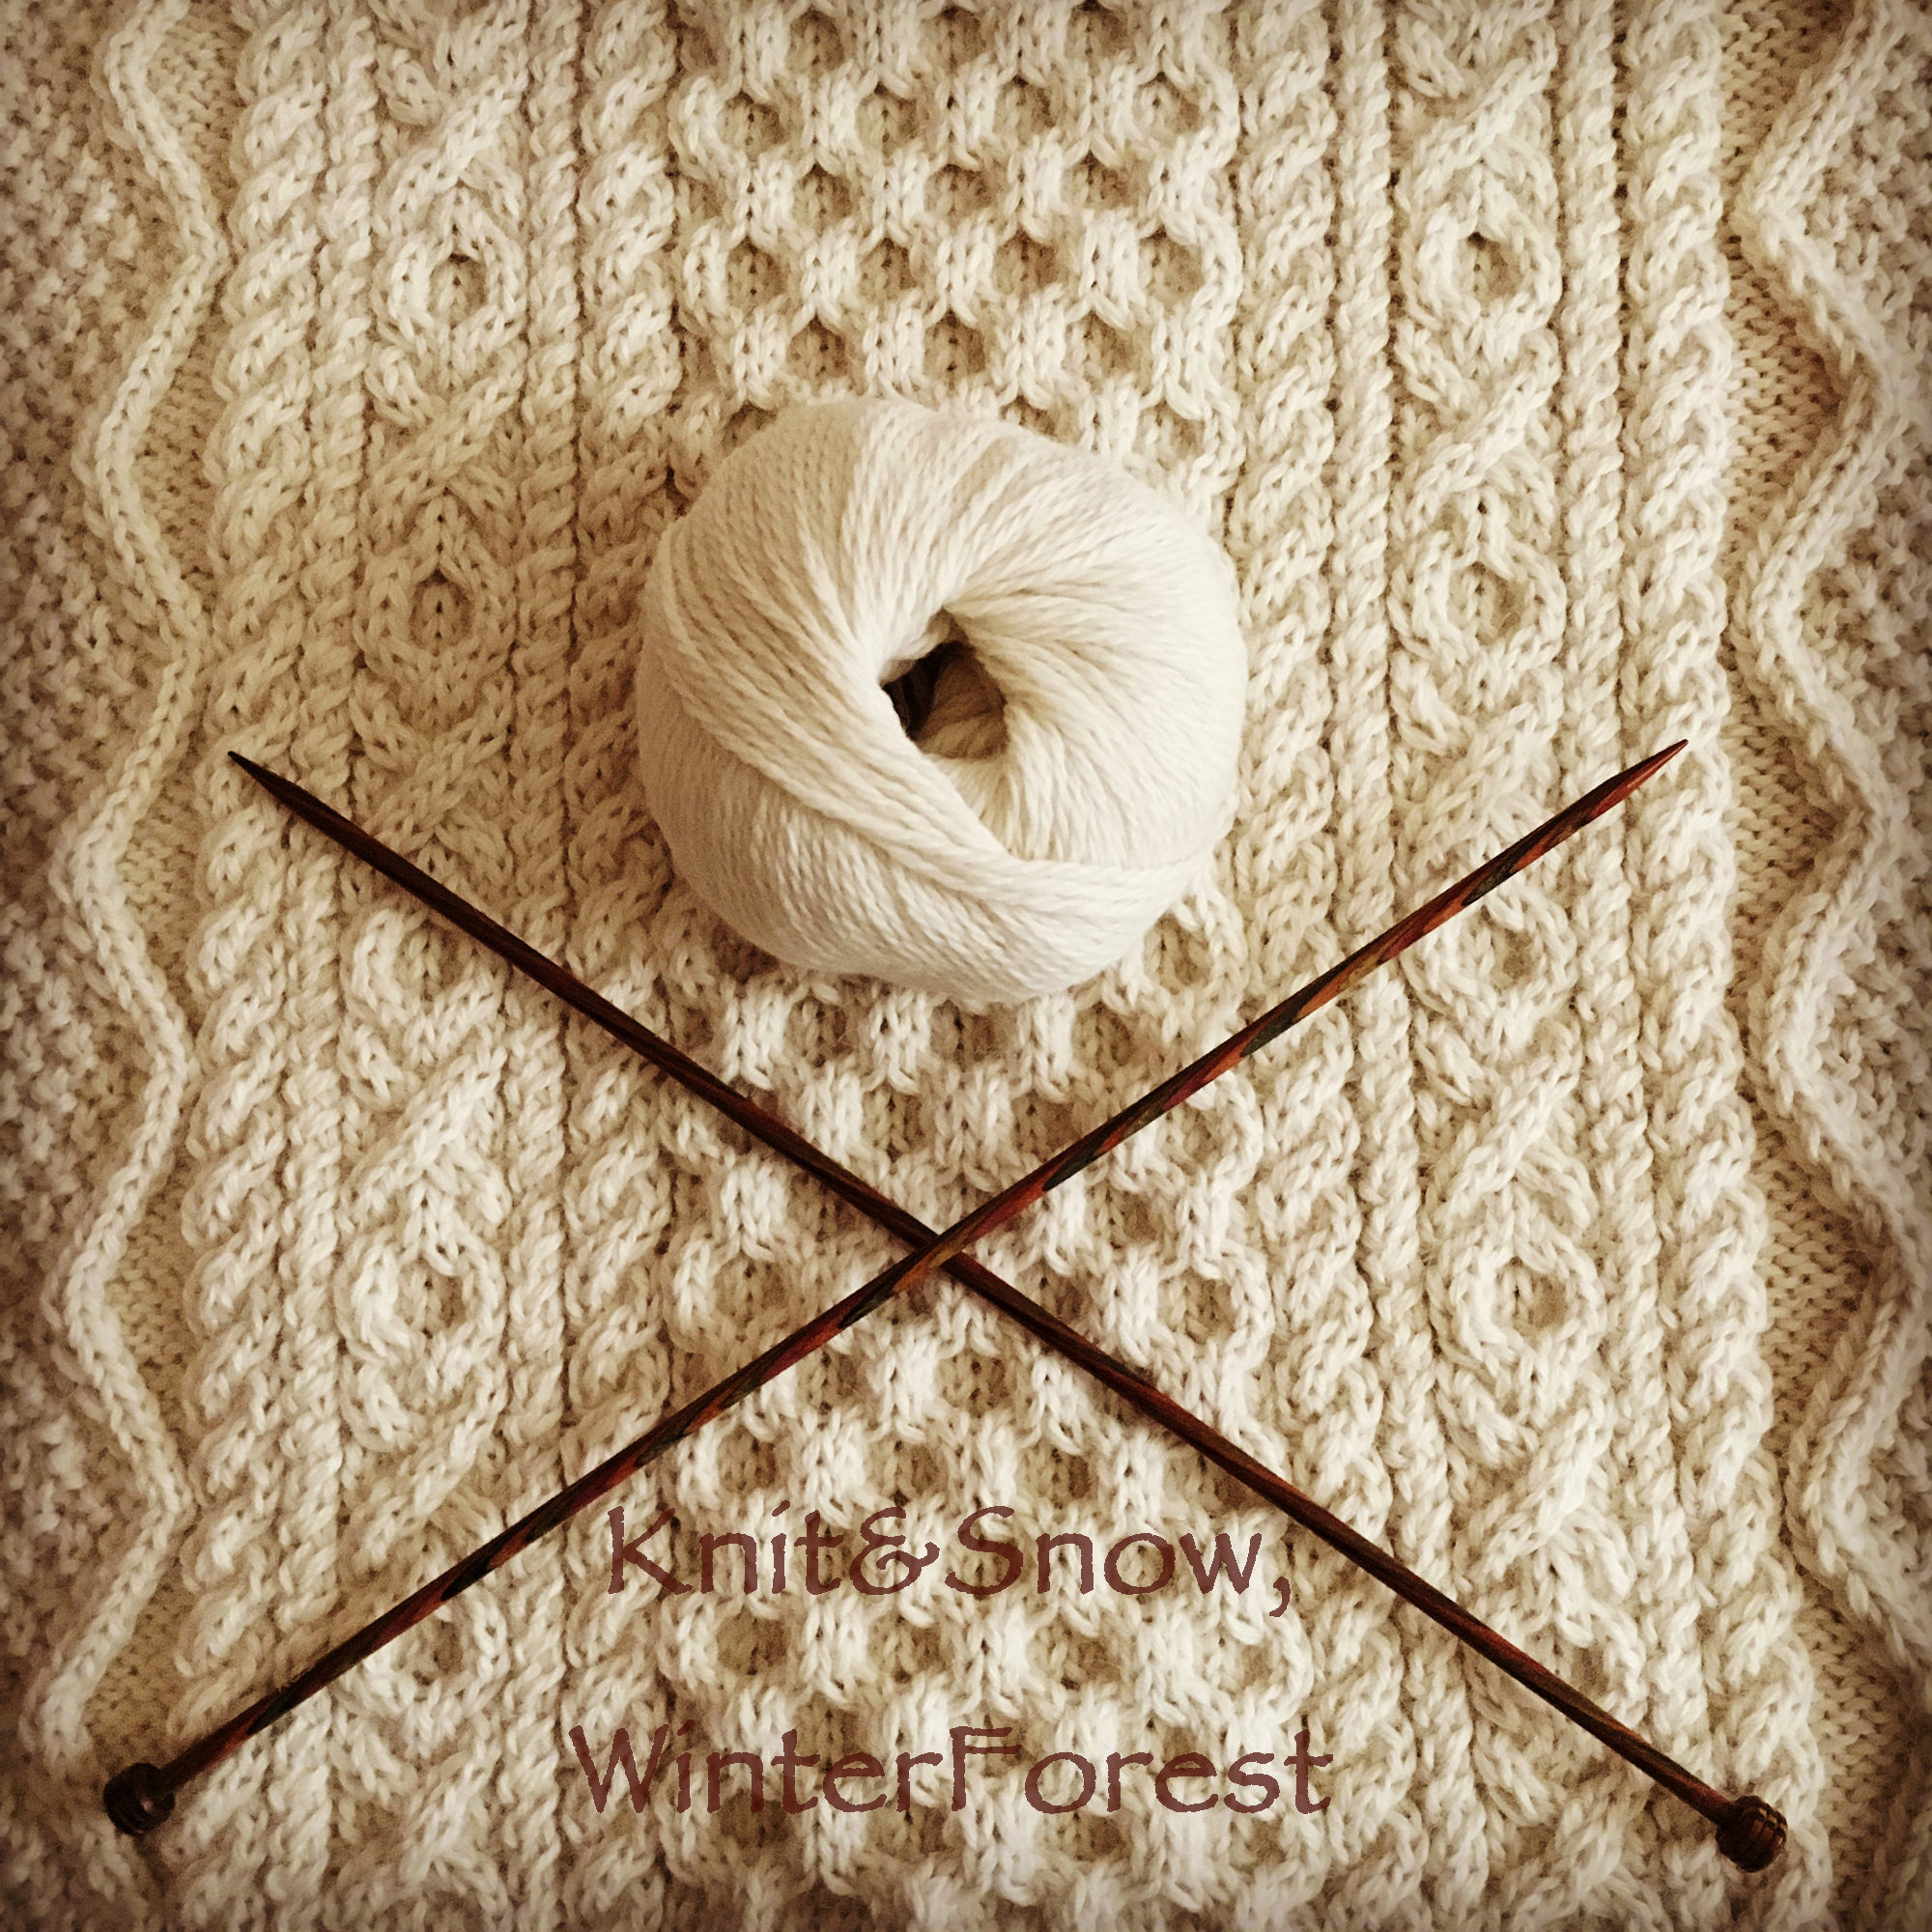 編み図】ベビーアルパカで編む アラン模様のセーター | Kint&Snow